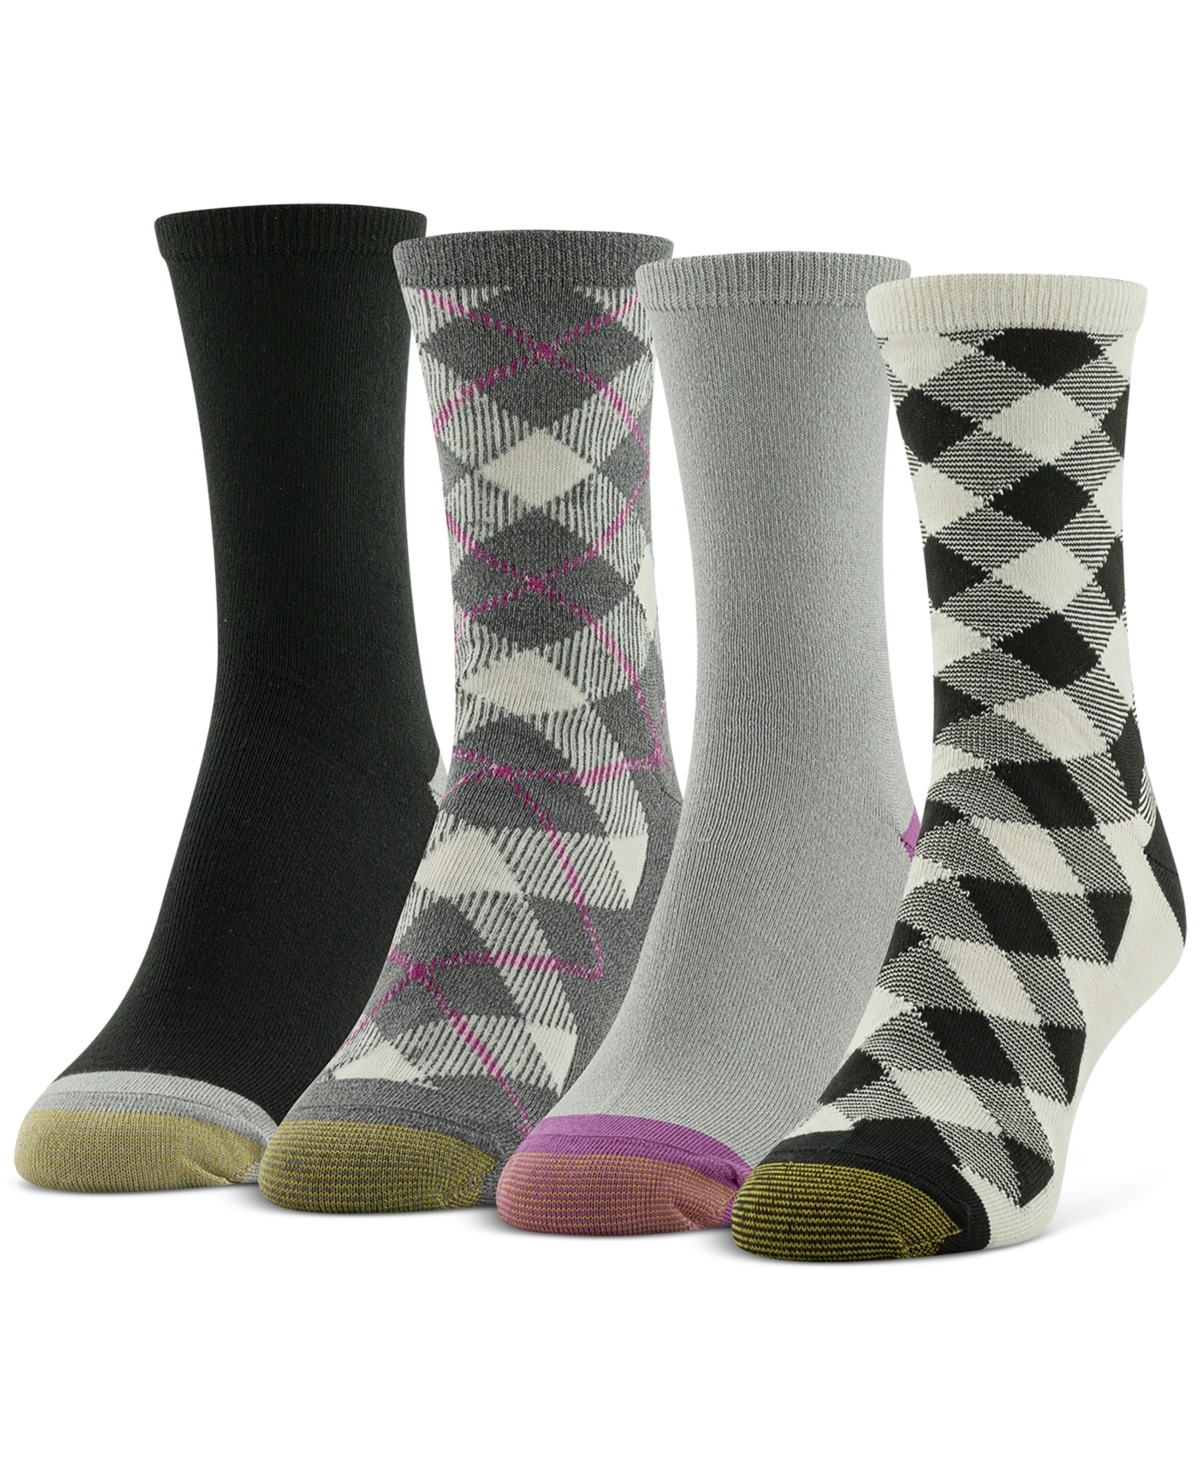 Women's 4-Pk. Checkmate Midi Socks - Asst